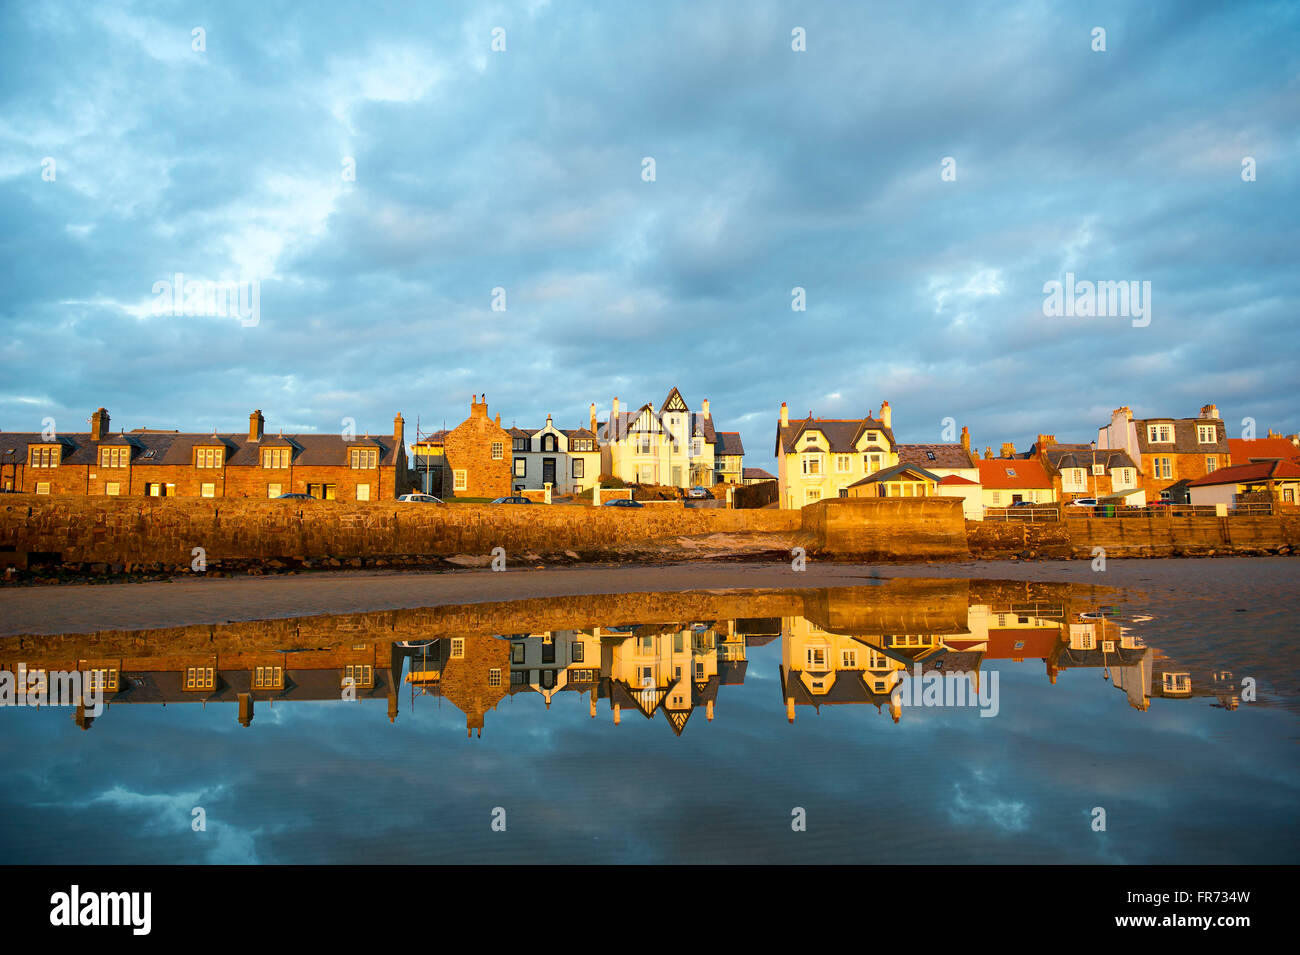 20/03/2016, il sole tramonta su una fila di case si riflette nell'acqua a Elie, una città costiera in East Neuk di Fife, Scozia. Foto Stock